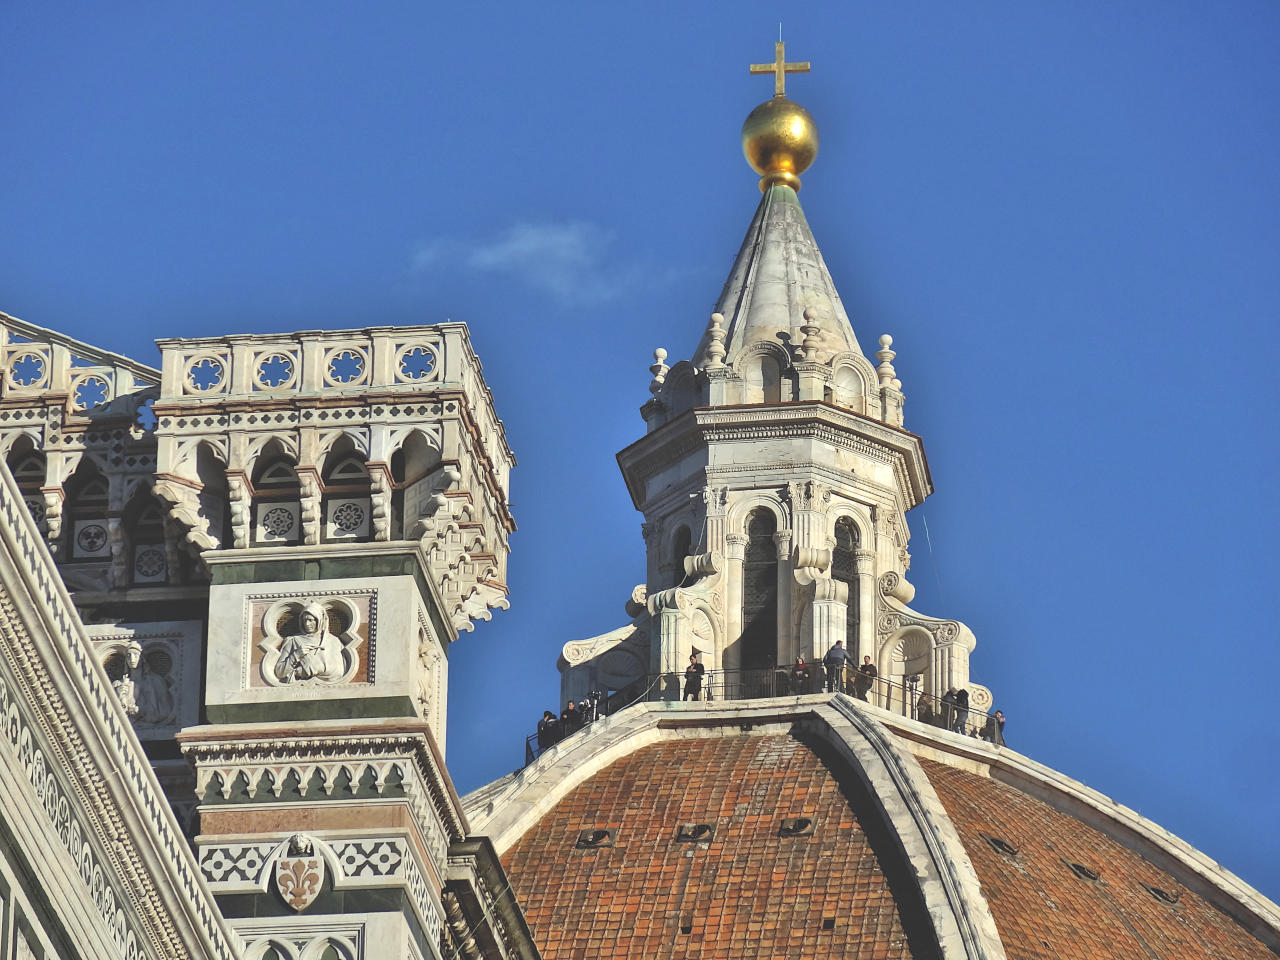 Coupole de Brunelleschi